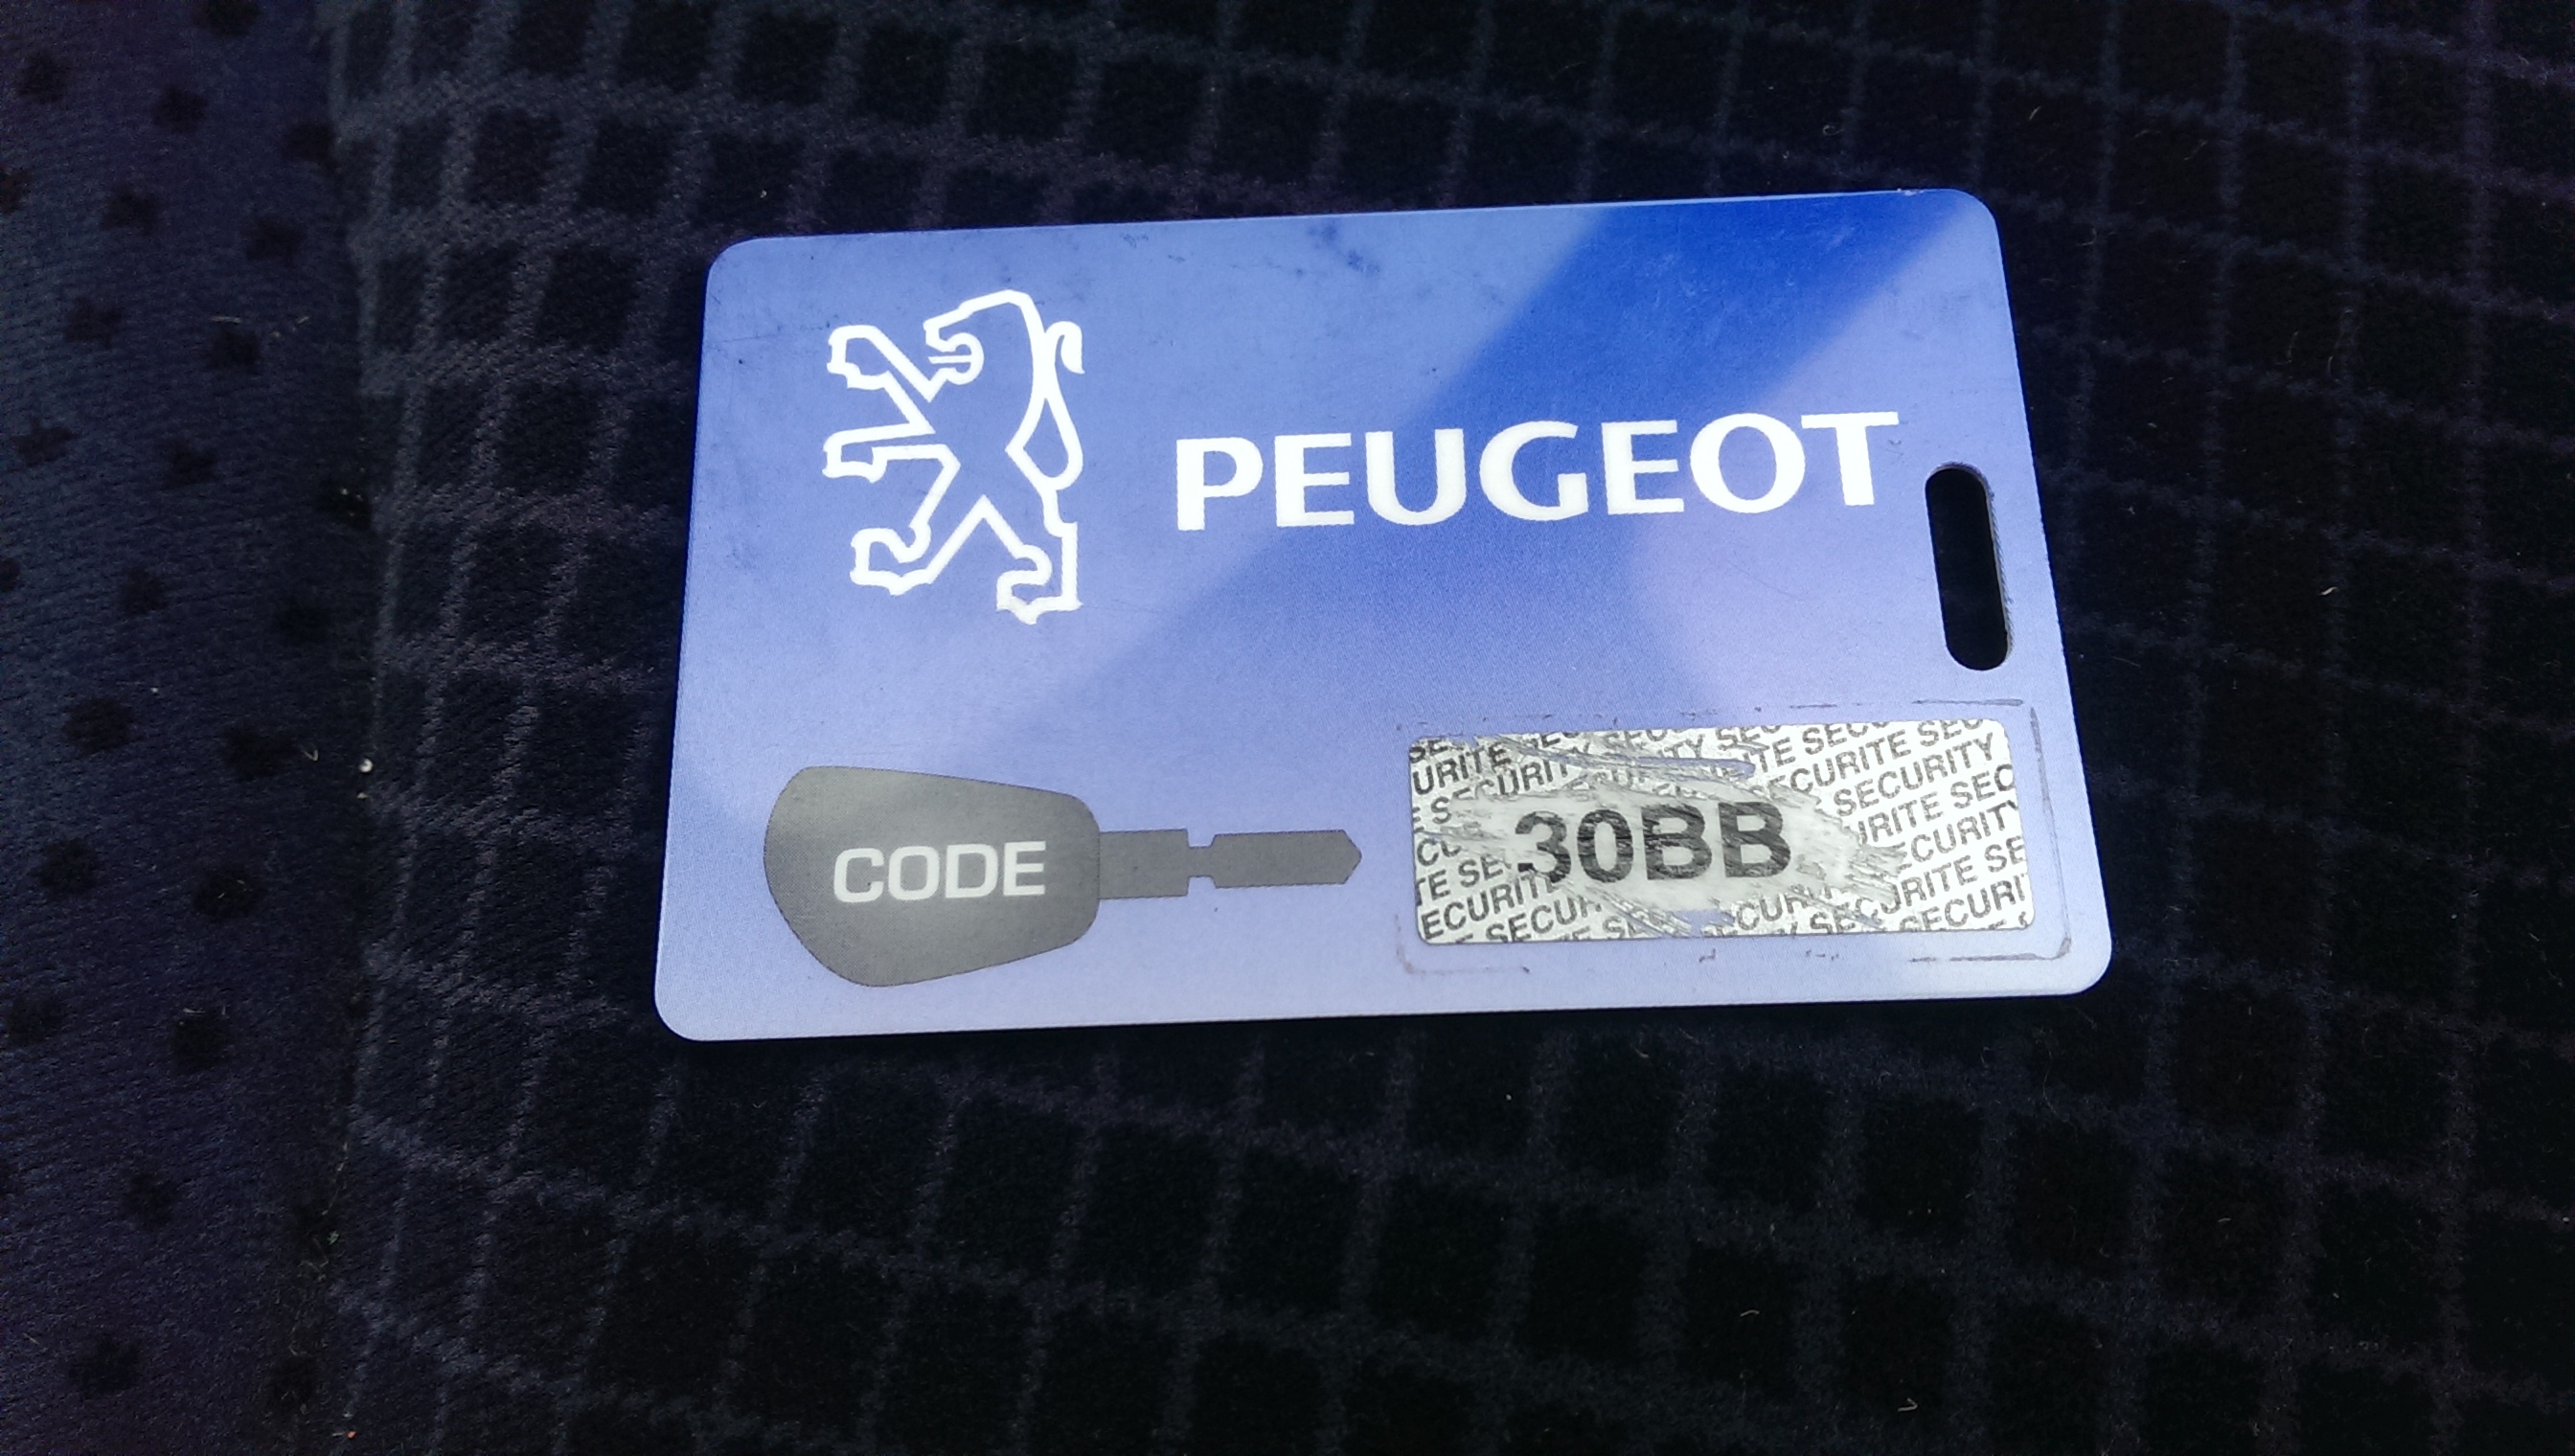 Пин коды иммобилайзеров. Карточка с пин кодом Пежо 308. Карточка с кодом Пежо 307. Карточка пин код Пежо 407. Карта с пин кодом Peugeot.